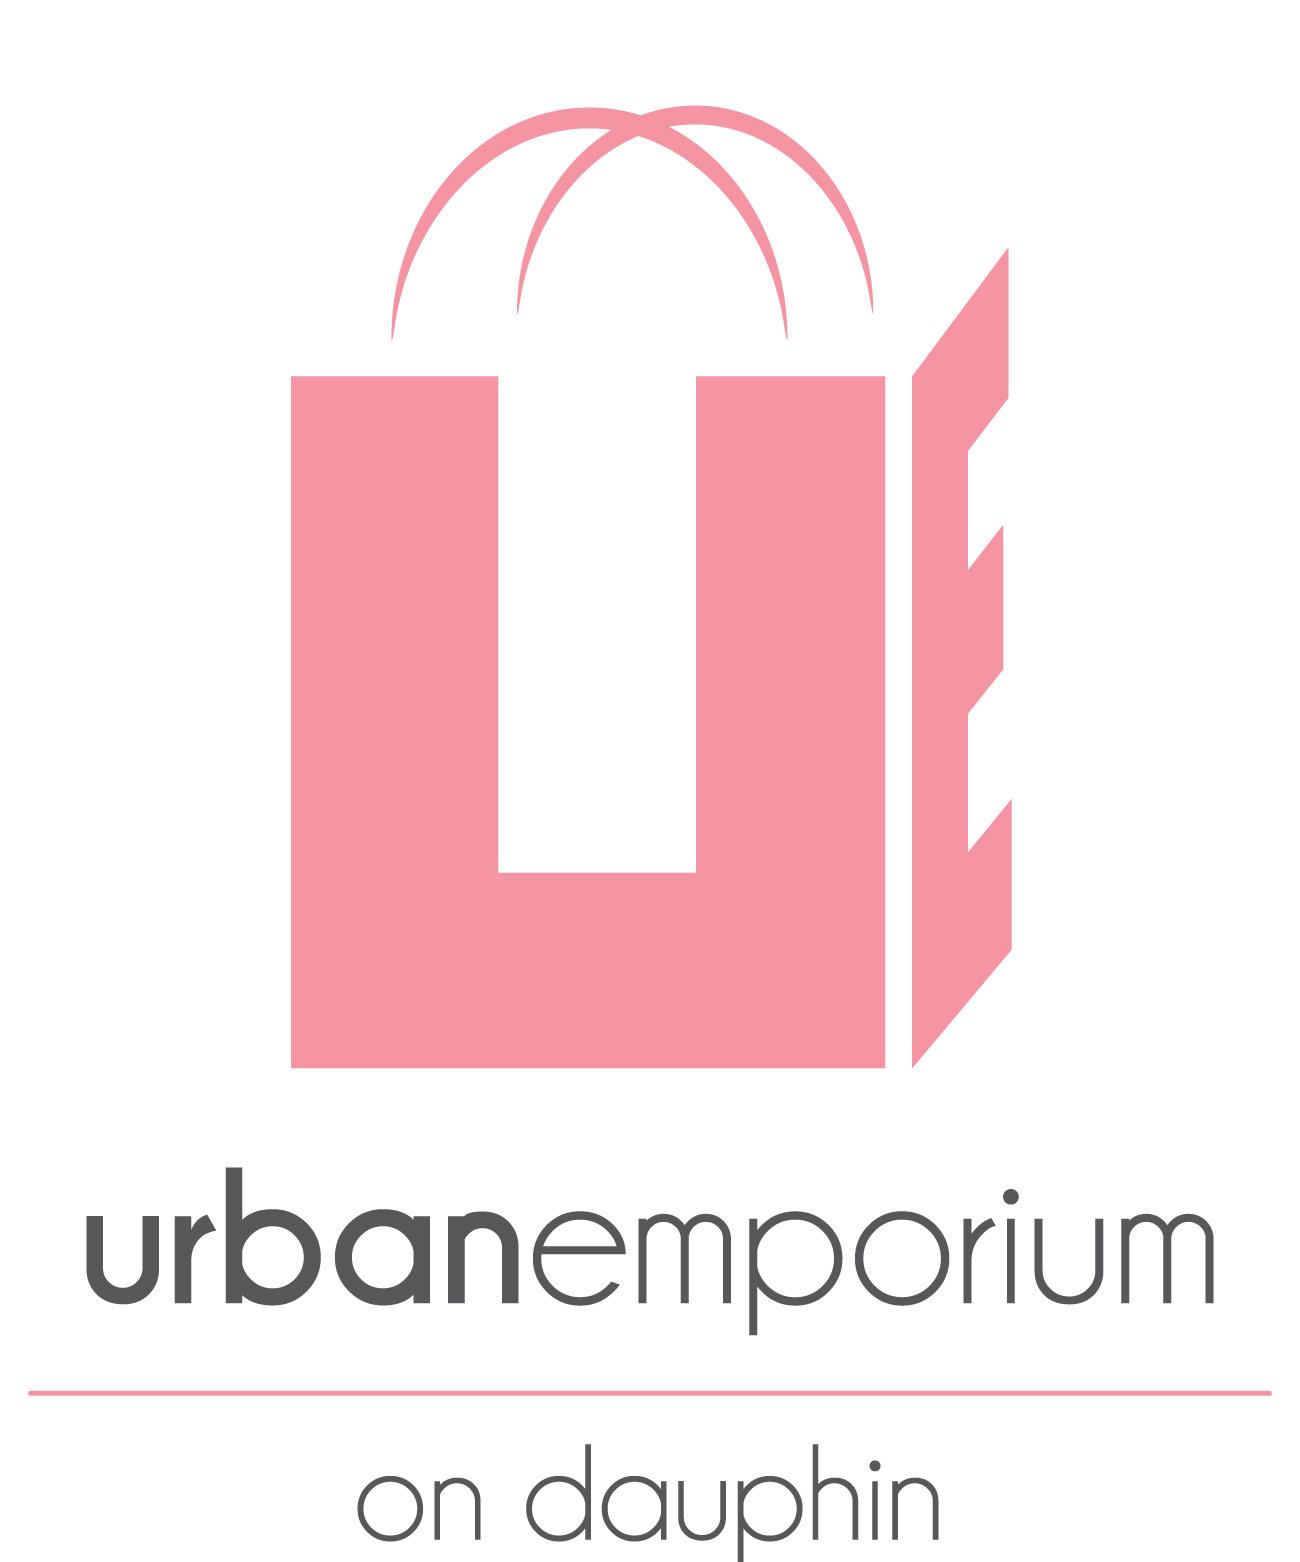 Urban Emporium